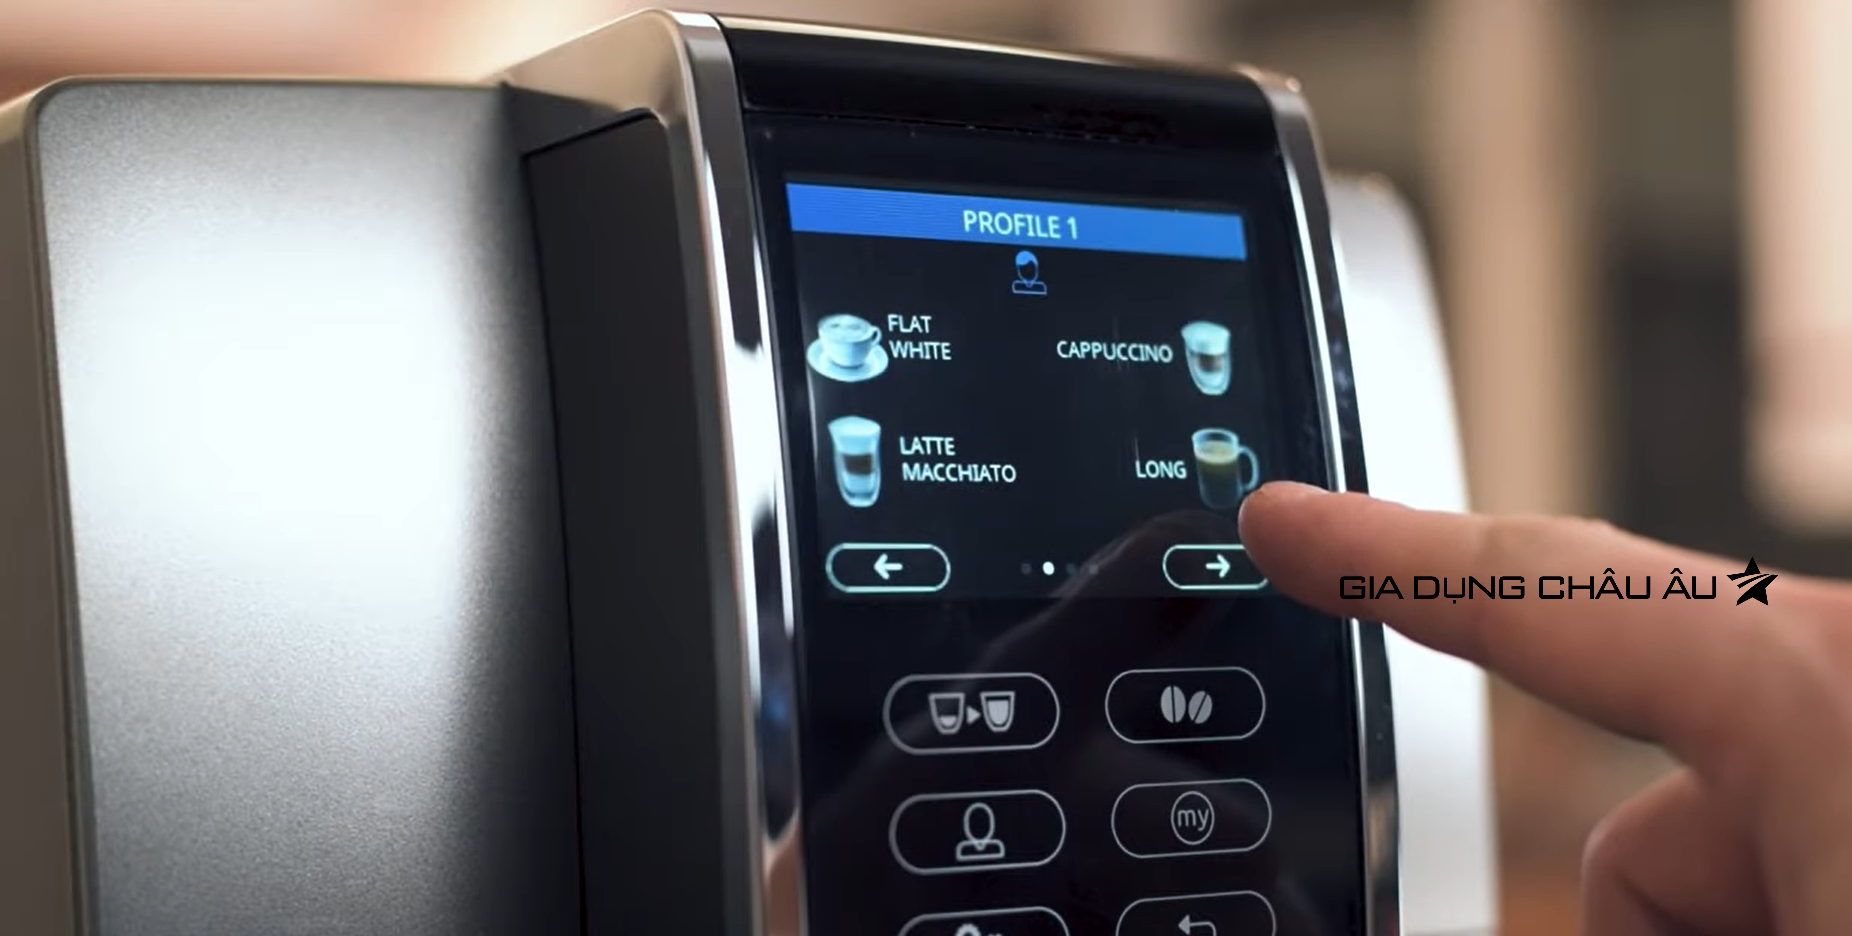  [CHÍNH HÃNG] Máy pha cà phê Delonghi Ecam370.95.T Delonghi Dinamica Plus Fully Automatic coffee machine 